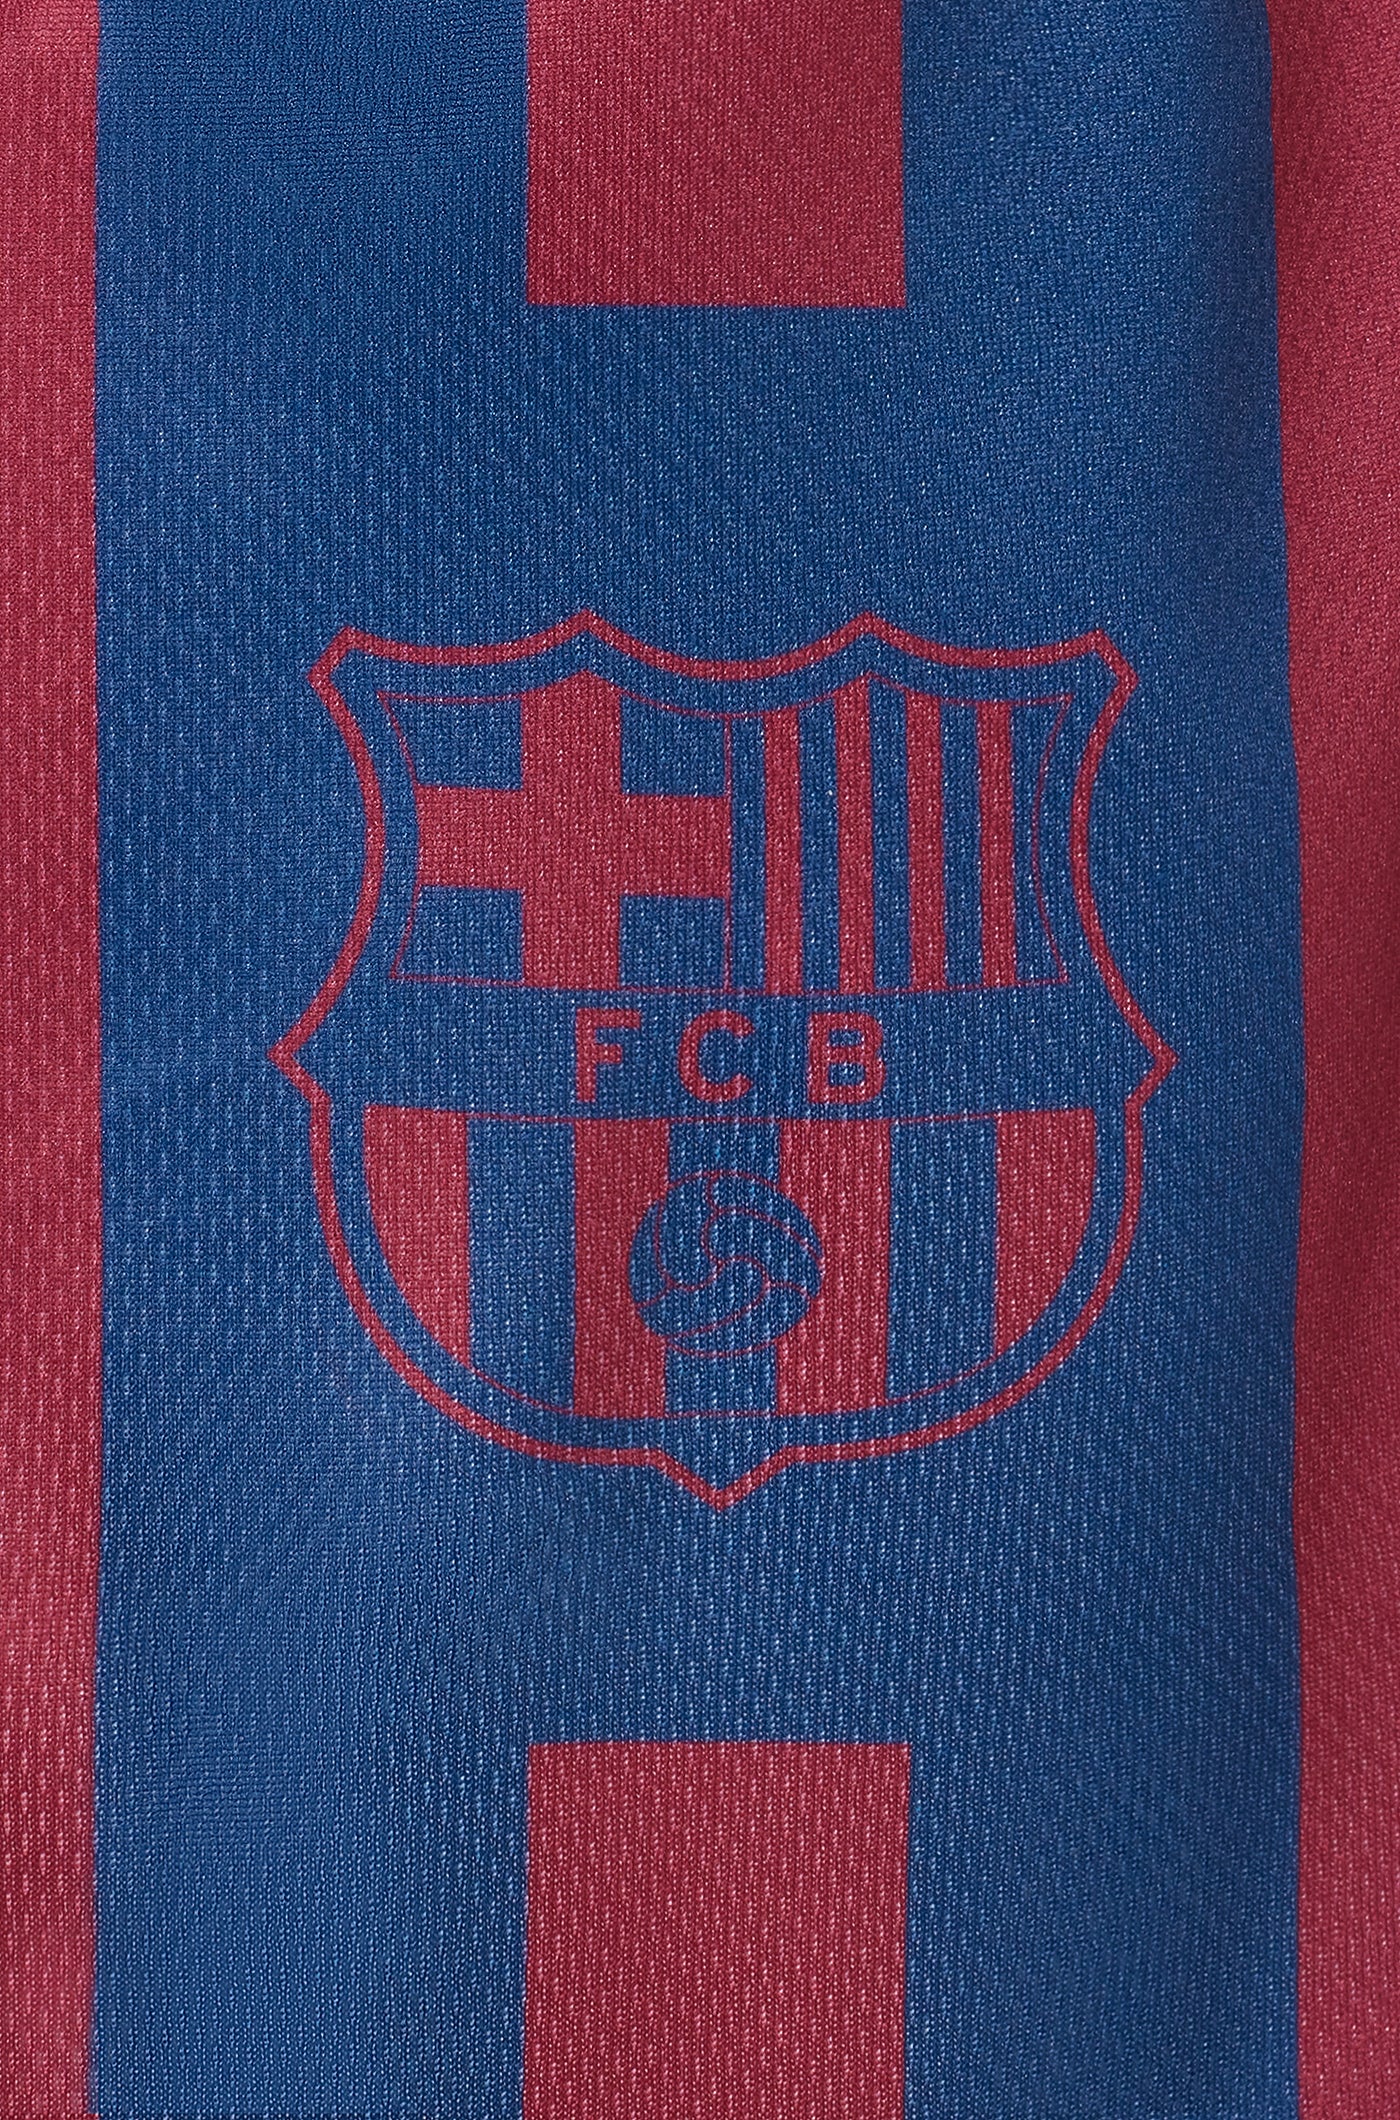 Samarreta per a gossos del FC Barcelona